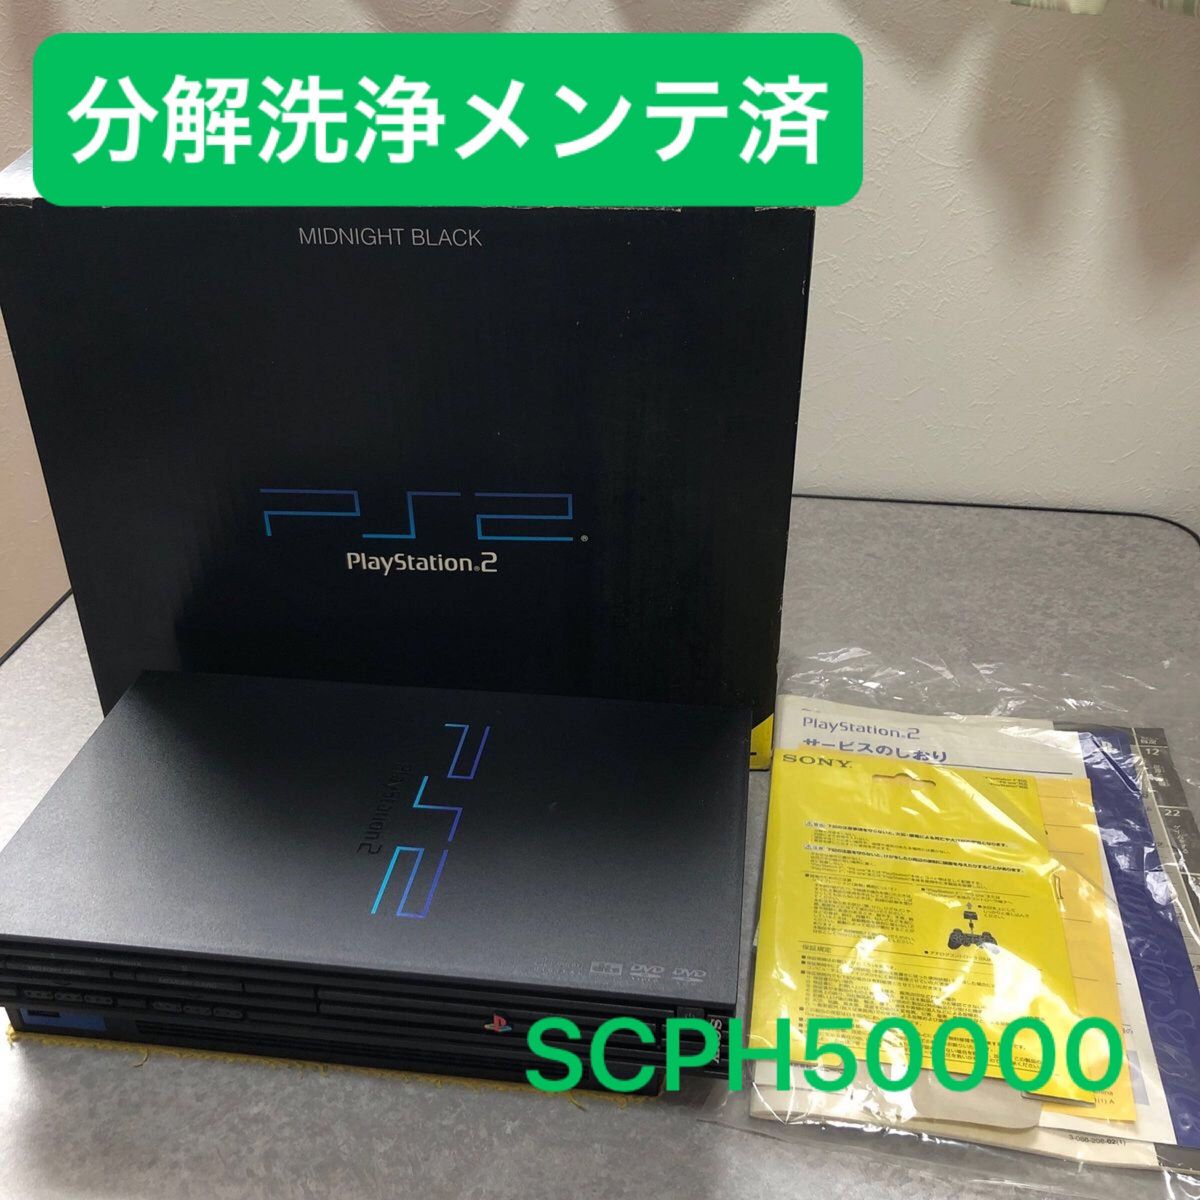 分解洗浄メンテ済SCPH50000ミッドナイトブラック箱付 PS2 プレイステーション2 本体　一式セットも可能CV